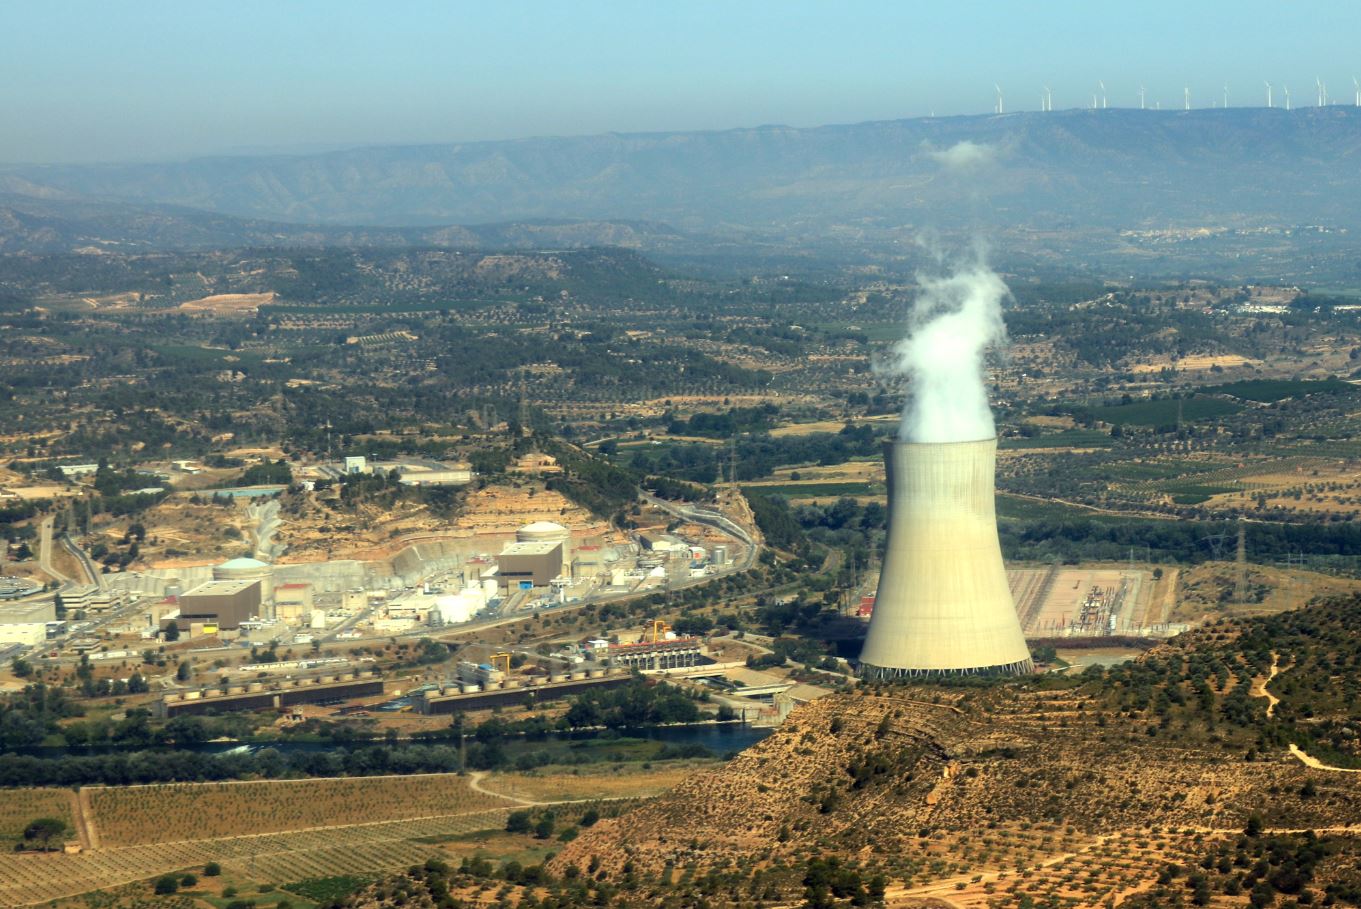 Vista aèria de la central nuclear d'Ascó, a la Ribera d'Ebre, amb la xemeneia fumejant a la dreta i els dos reactors a l'esquerra